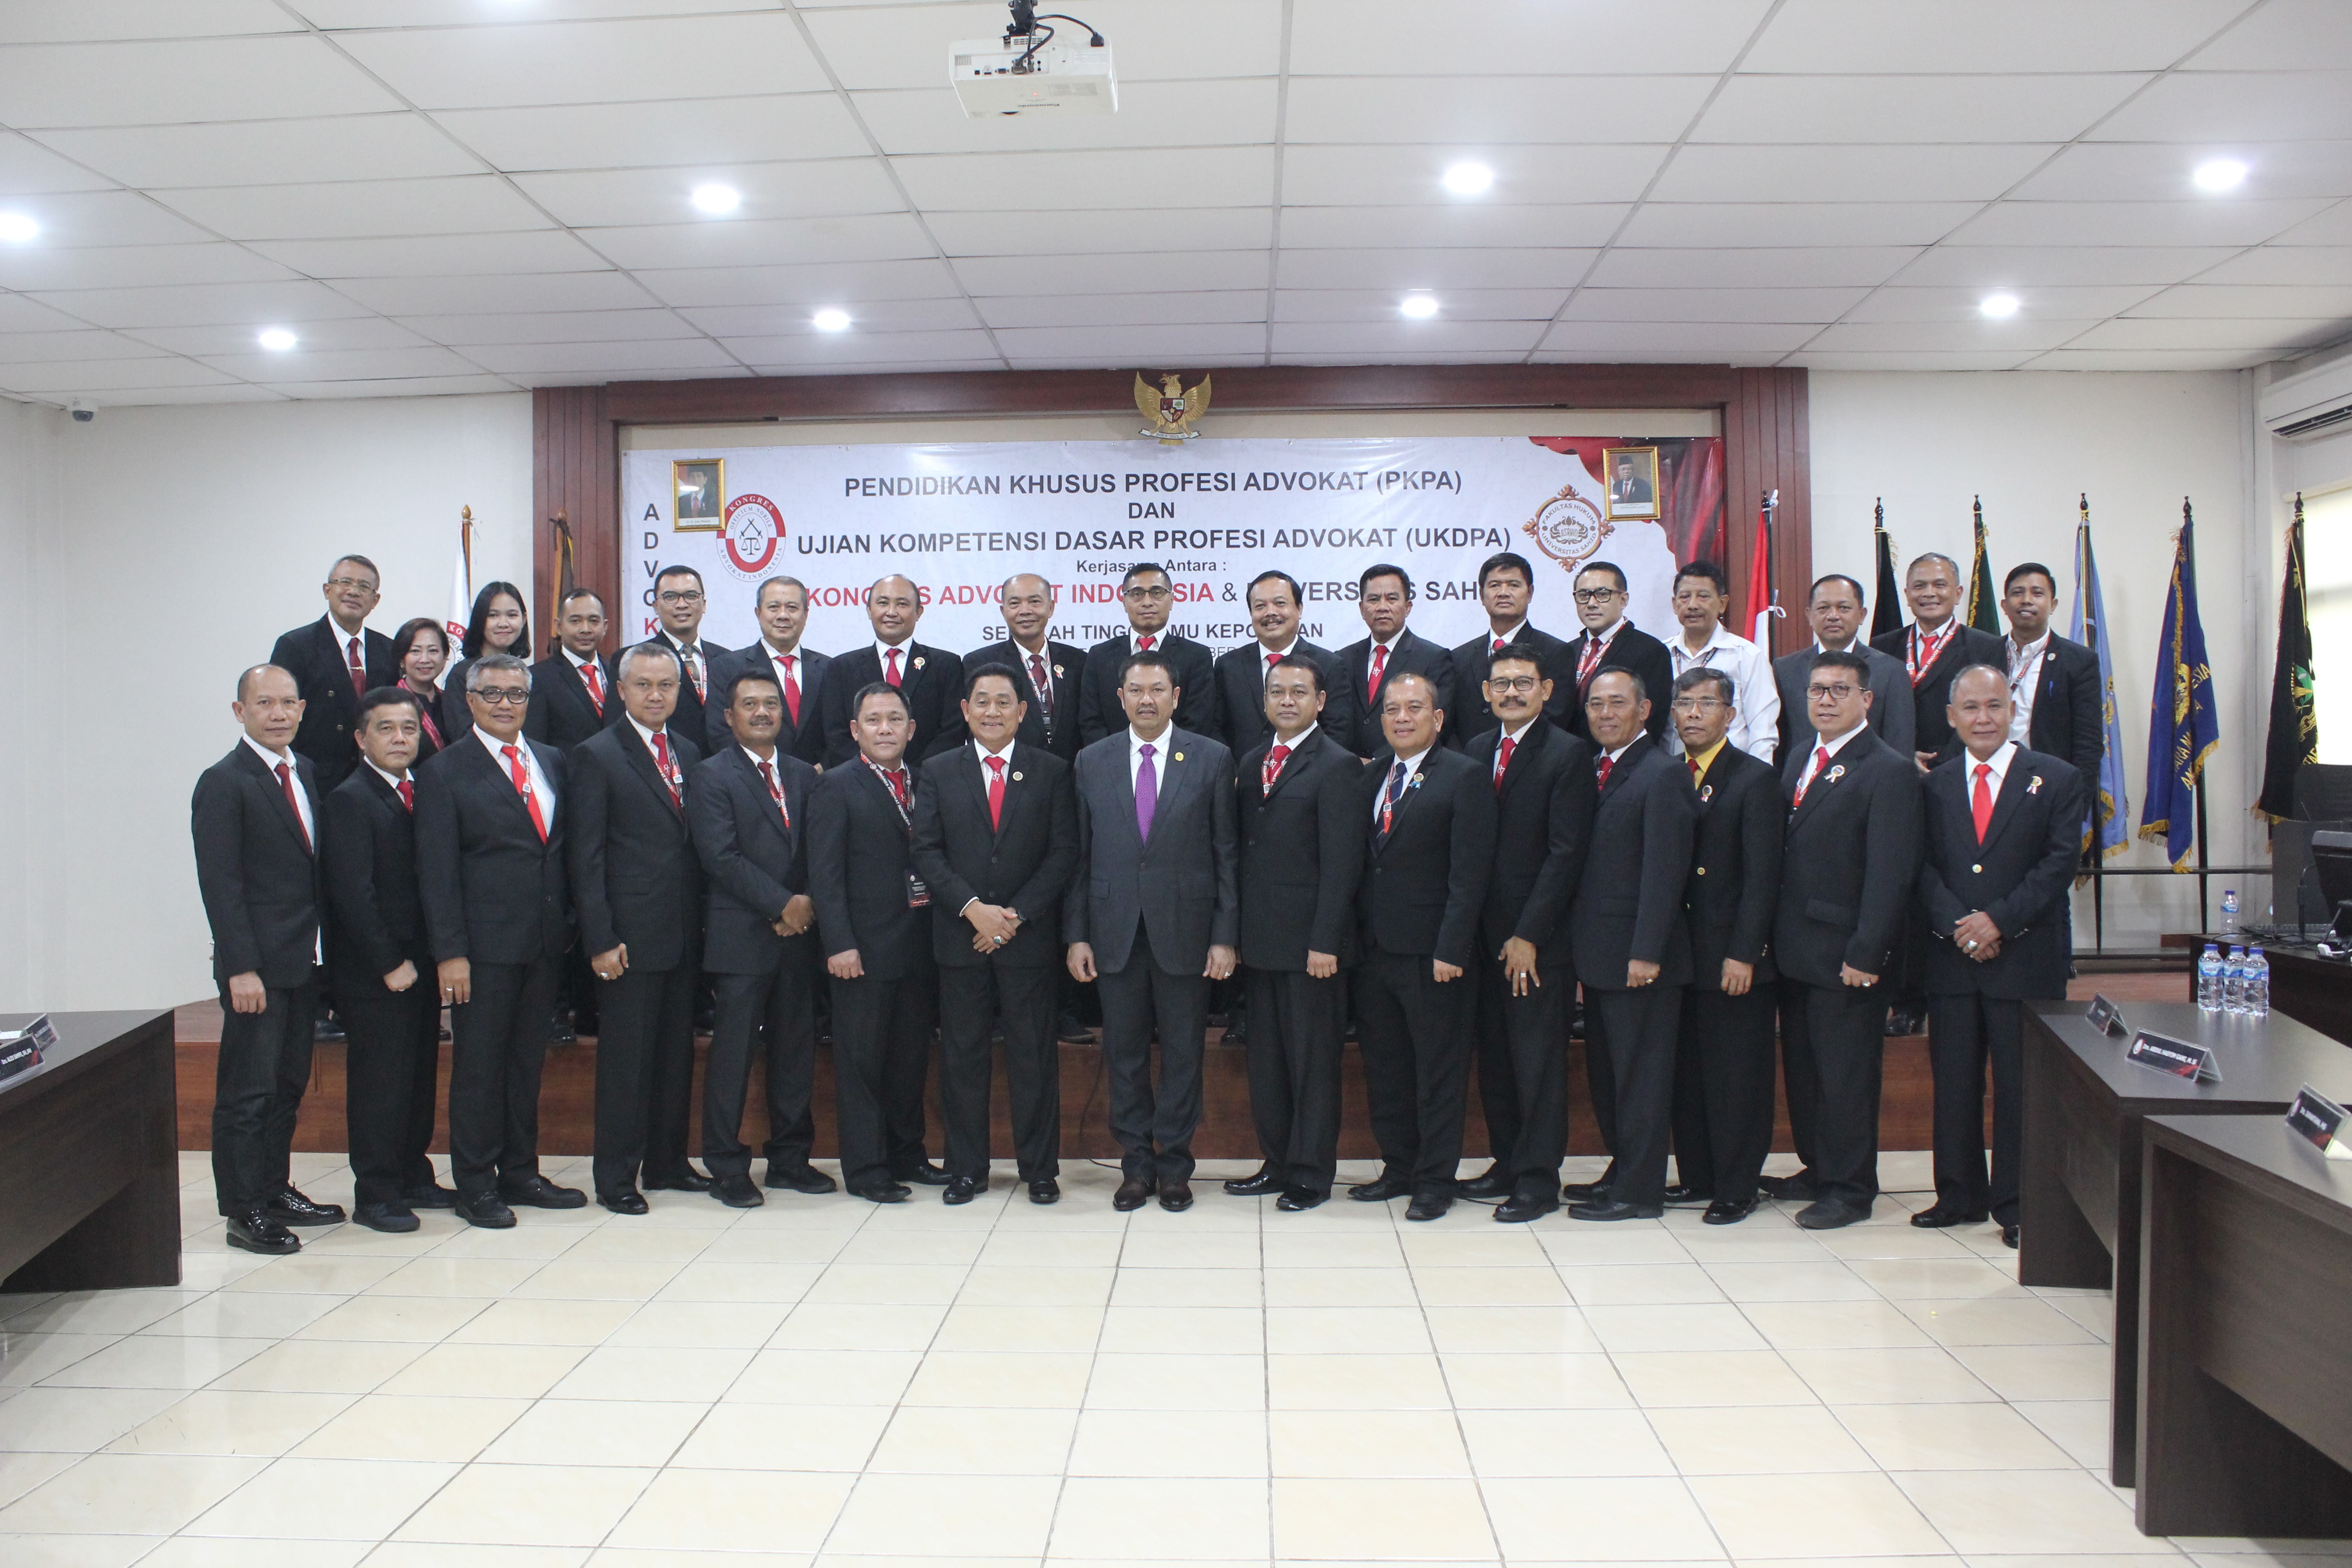 Presiden KAI, Sekretaris Umum, dan Bendahara Umum DPP KAI bersama alumni Akpol â€™87 sebagai  peserta PKPA.  Foto: istimewa.